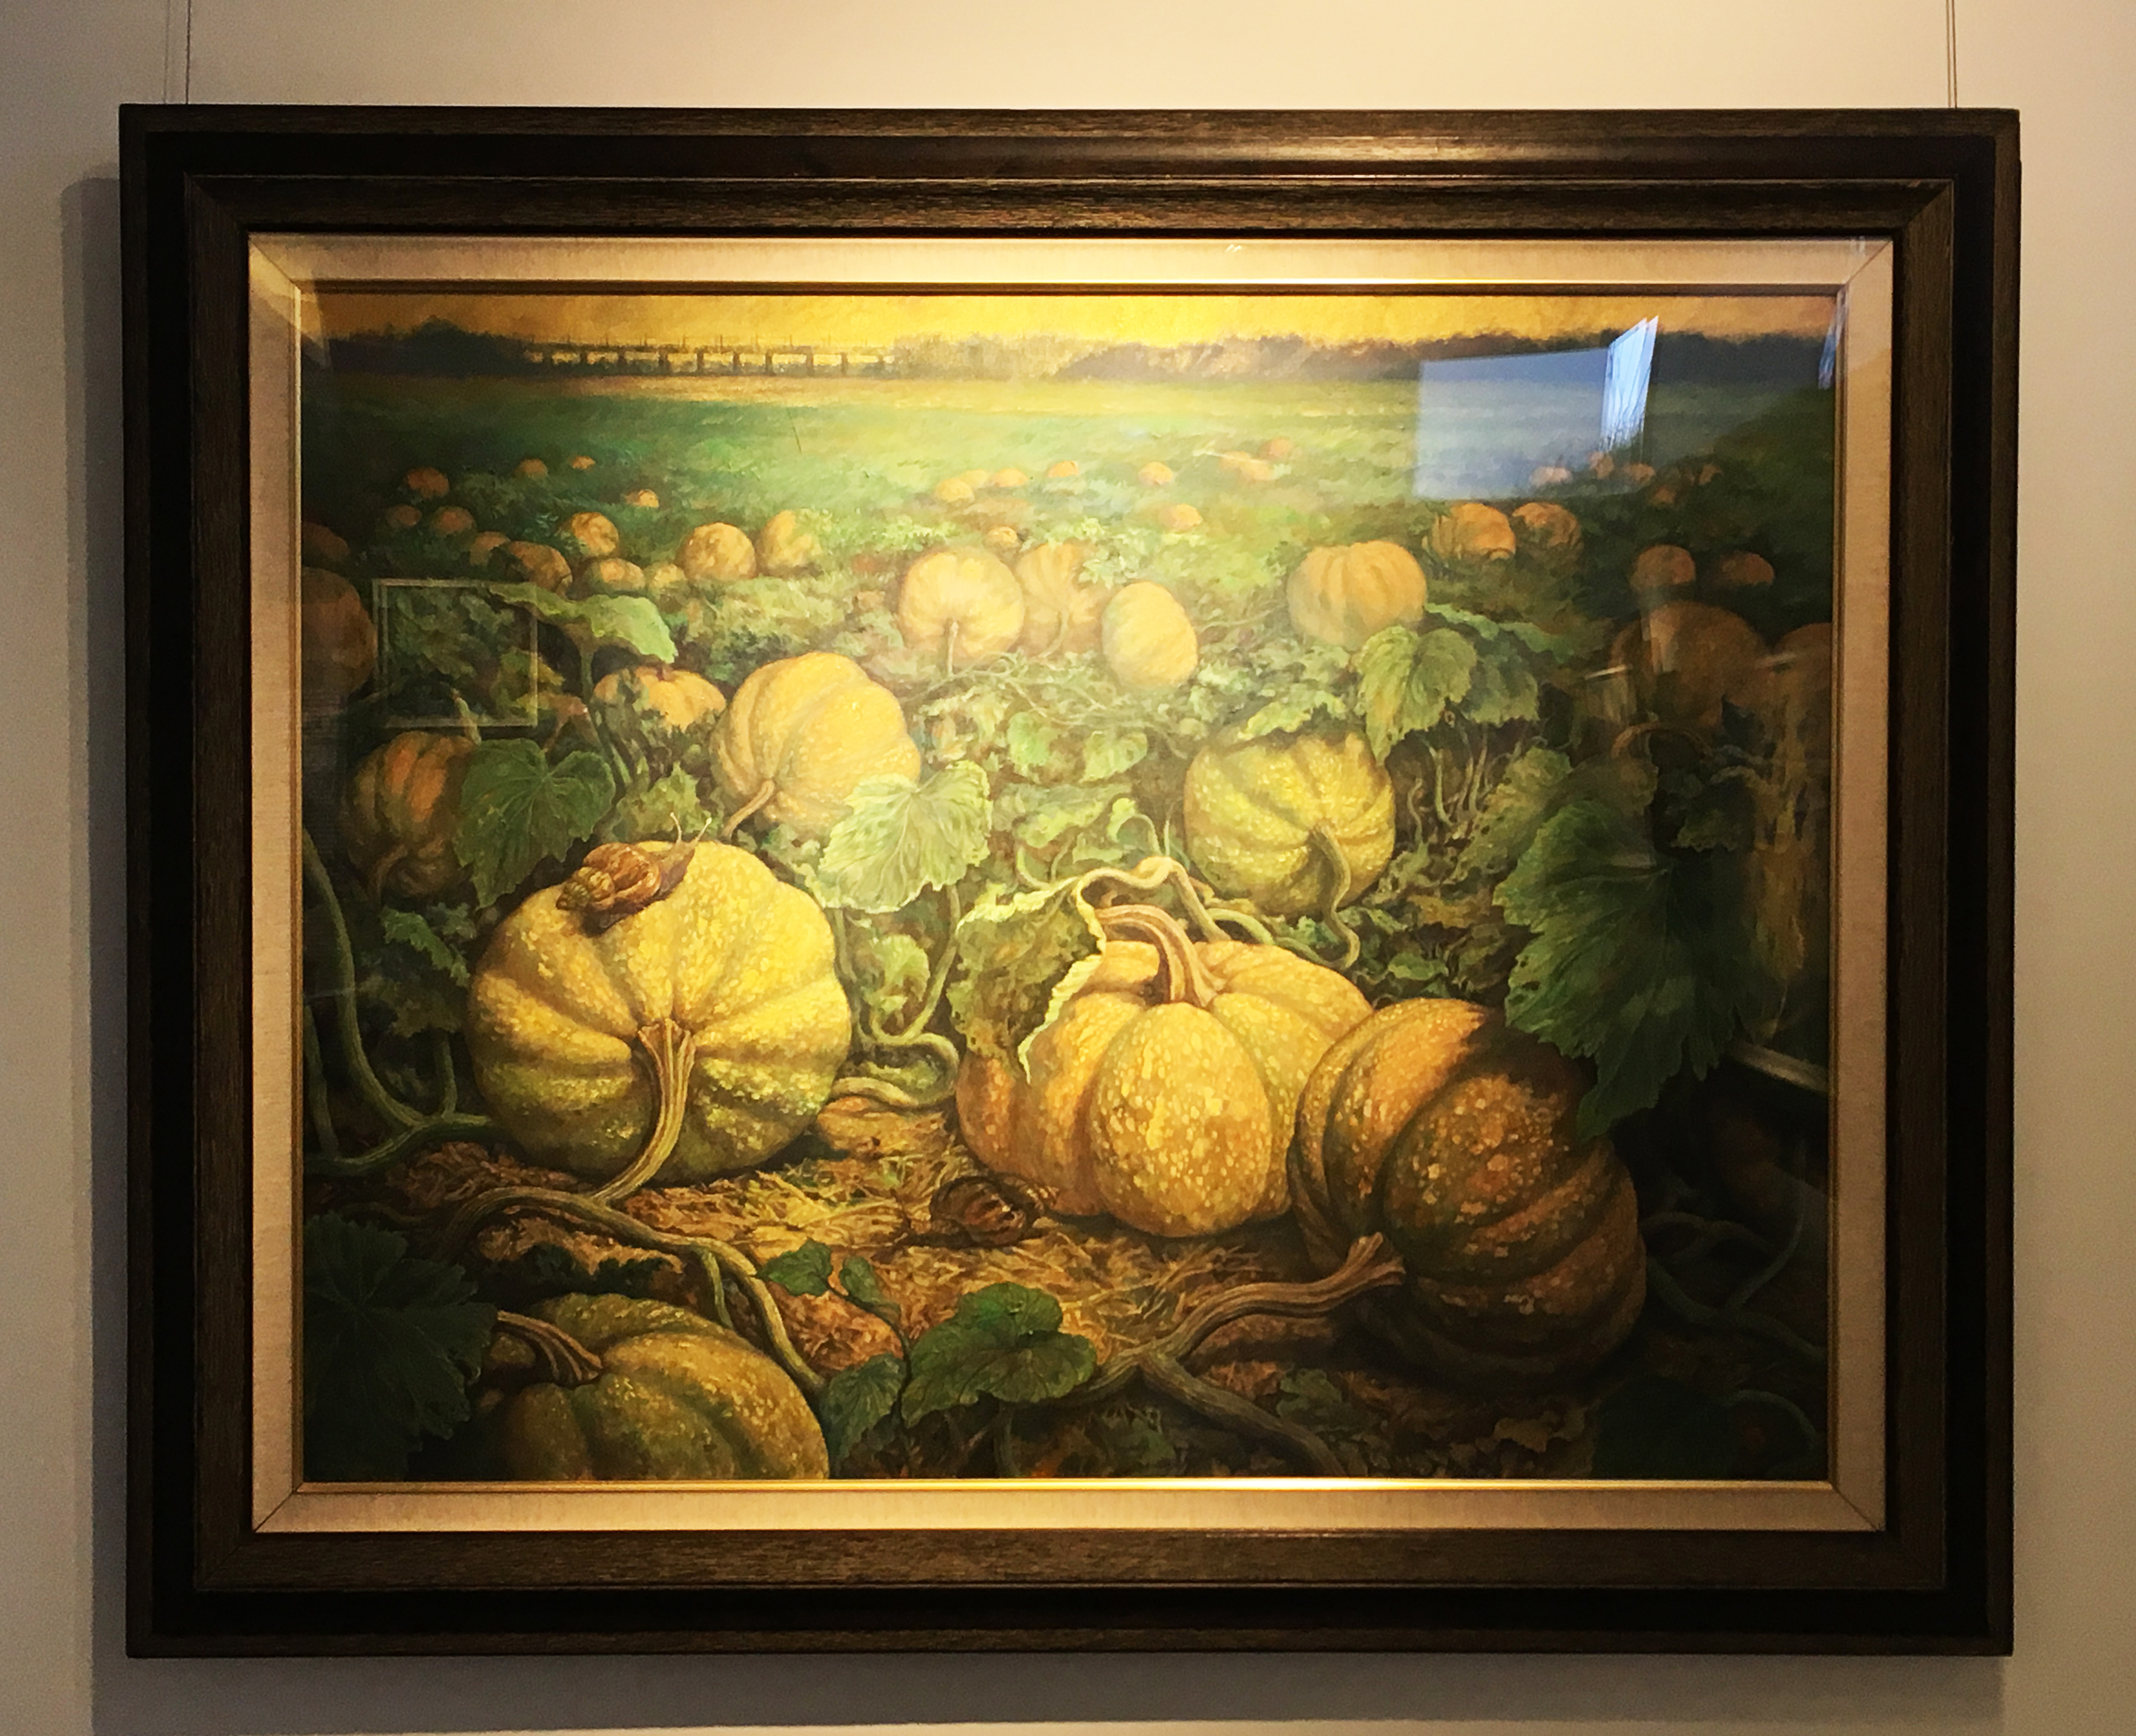 劉子平，《菊島之華》，91 x 116.5 cm，油彩、壓克力、綜合媒材、畫布，2019。